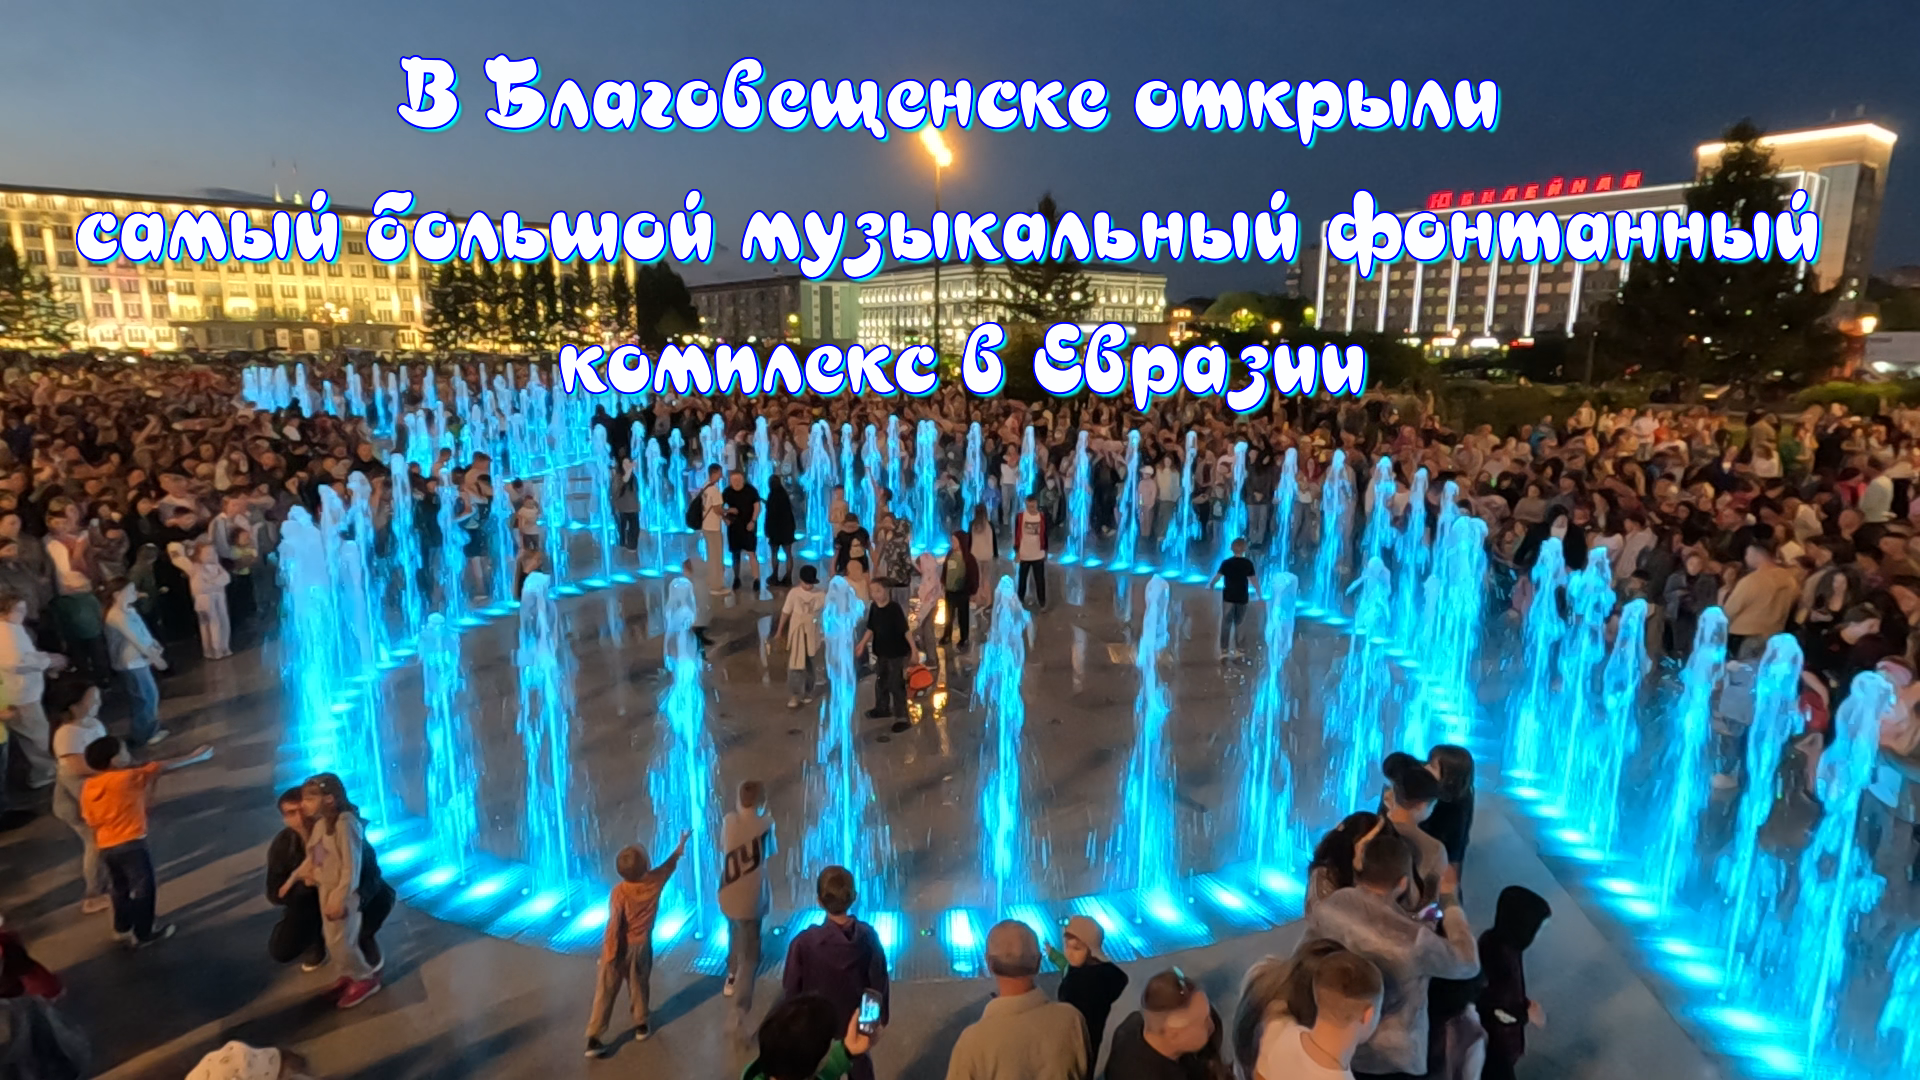 В Благовещенске открыли самый большой музыкальный фонтанный комплекс в Евразии